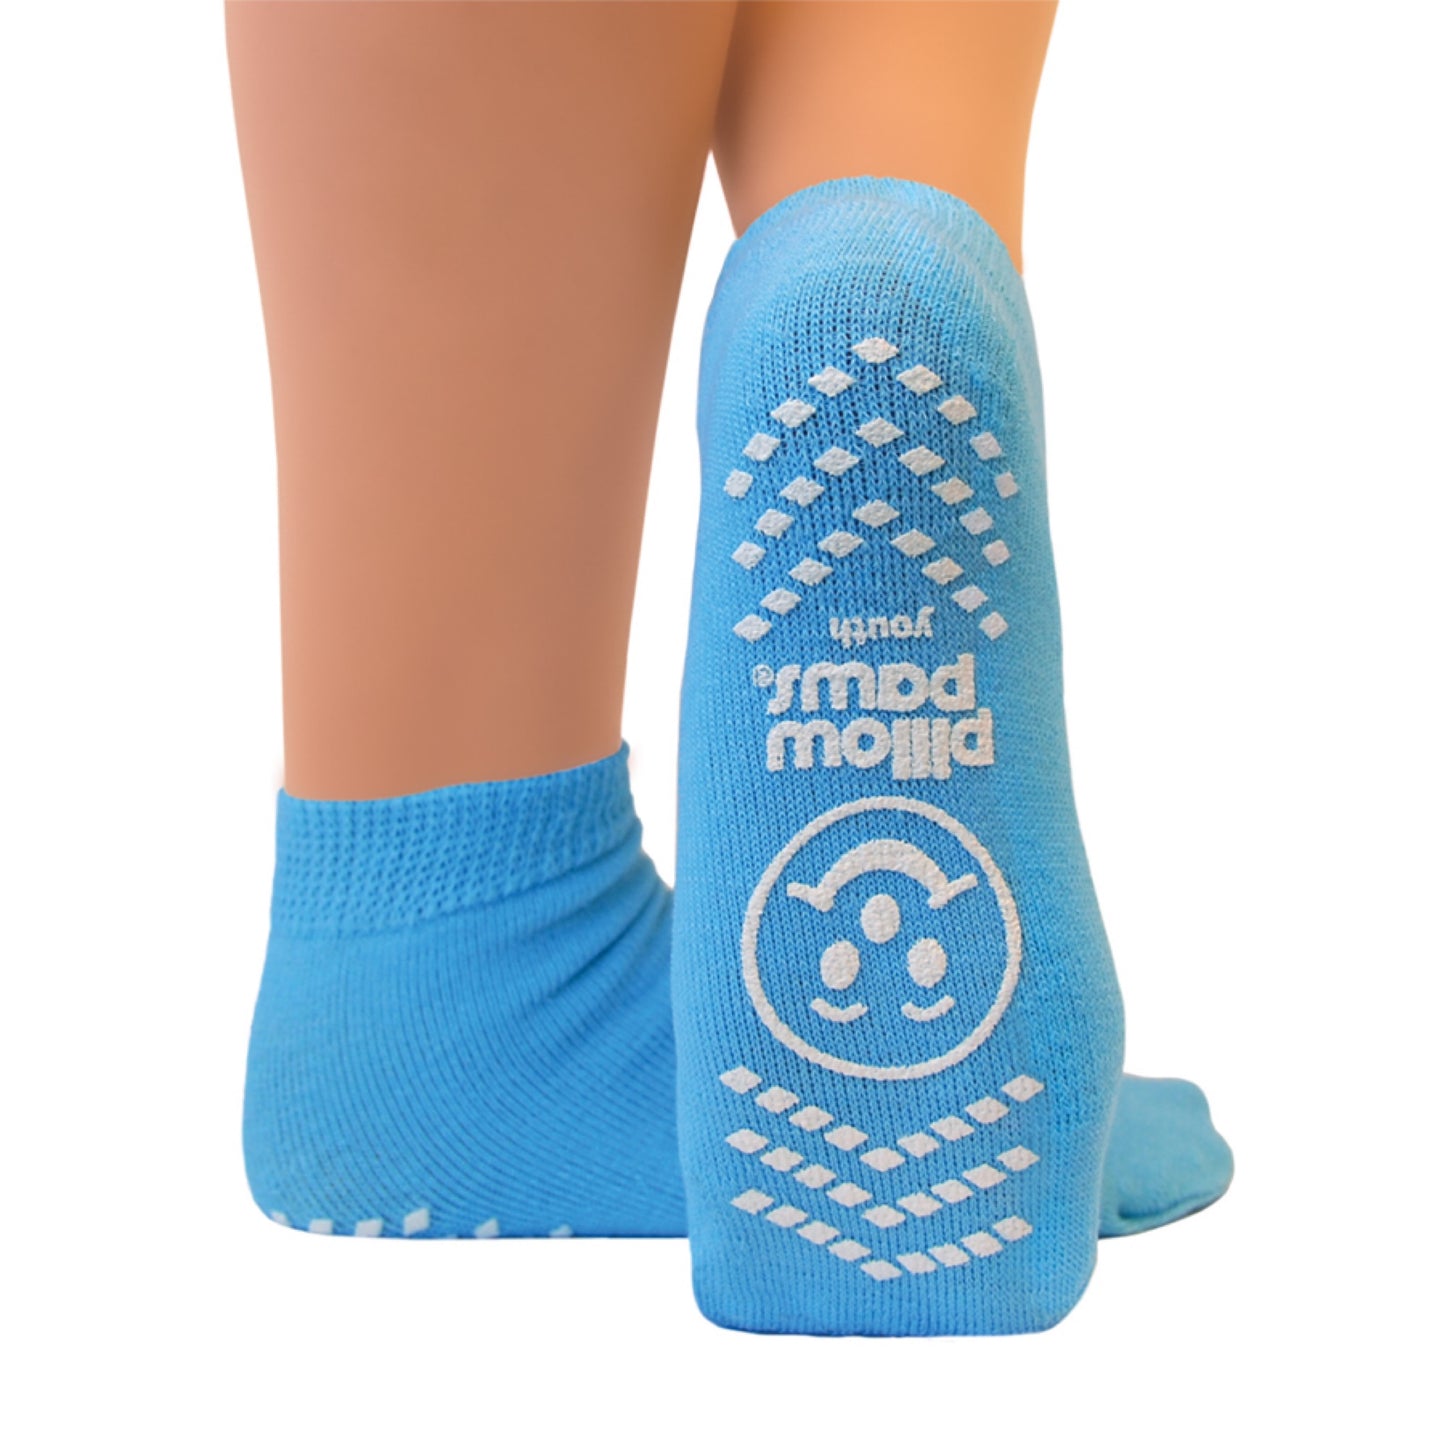 Senior Anti-Slip Socks - Size 26-33 (Sky blue)